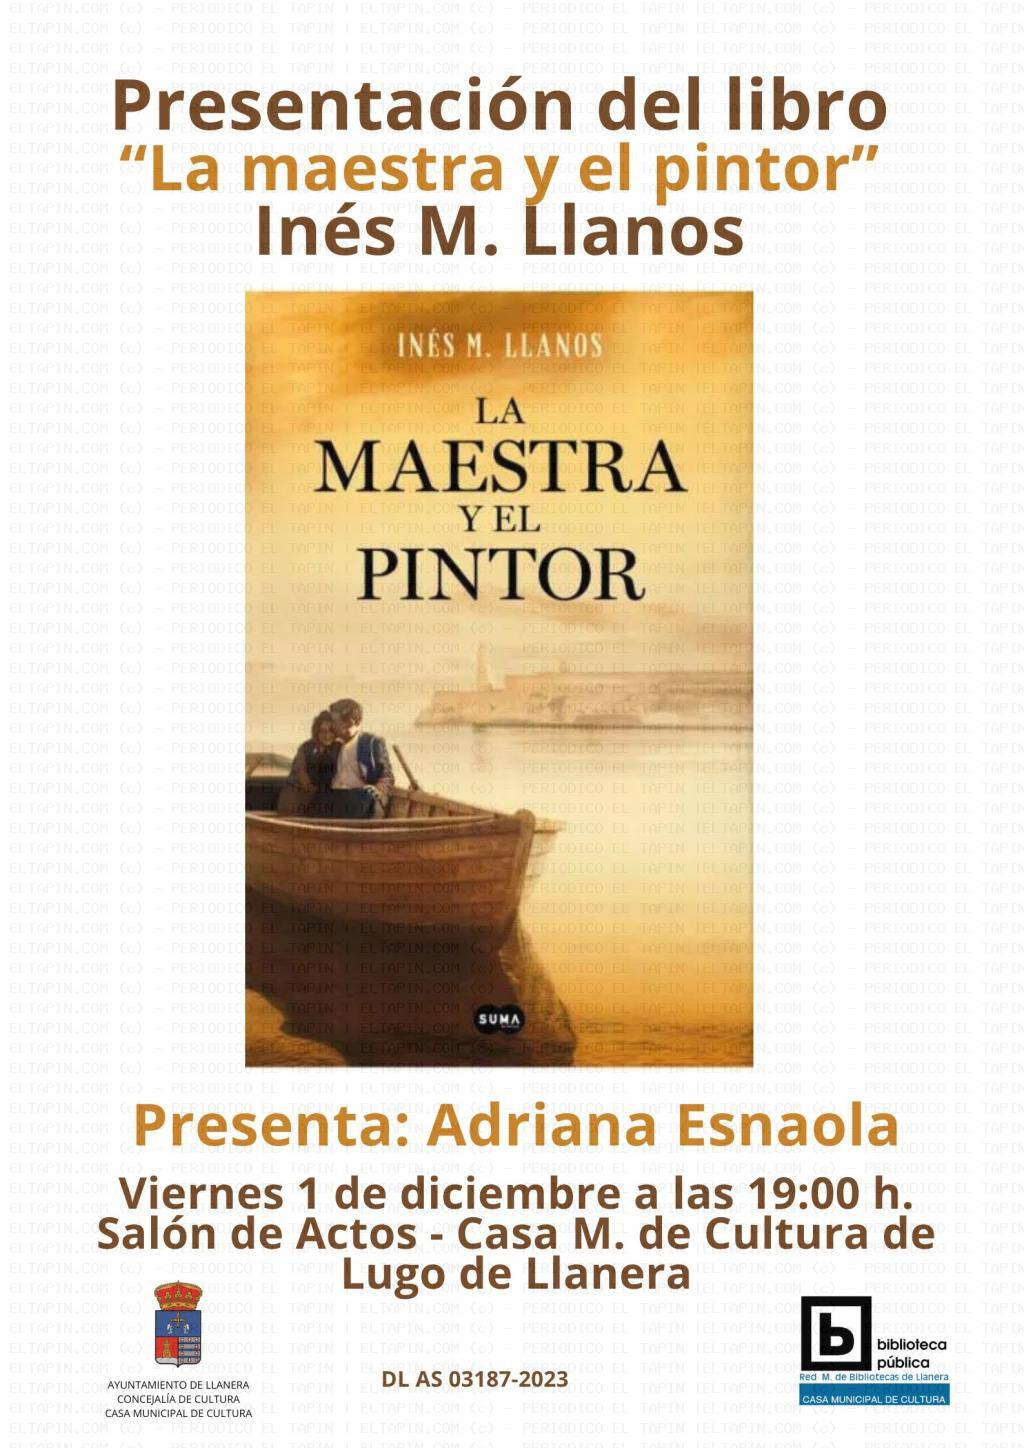 El Tapin - La Casa de Cultura de Lugo de Llanera acoge el 1 de diciembre la presentación del libro "La maestra y el pintor"